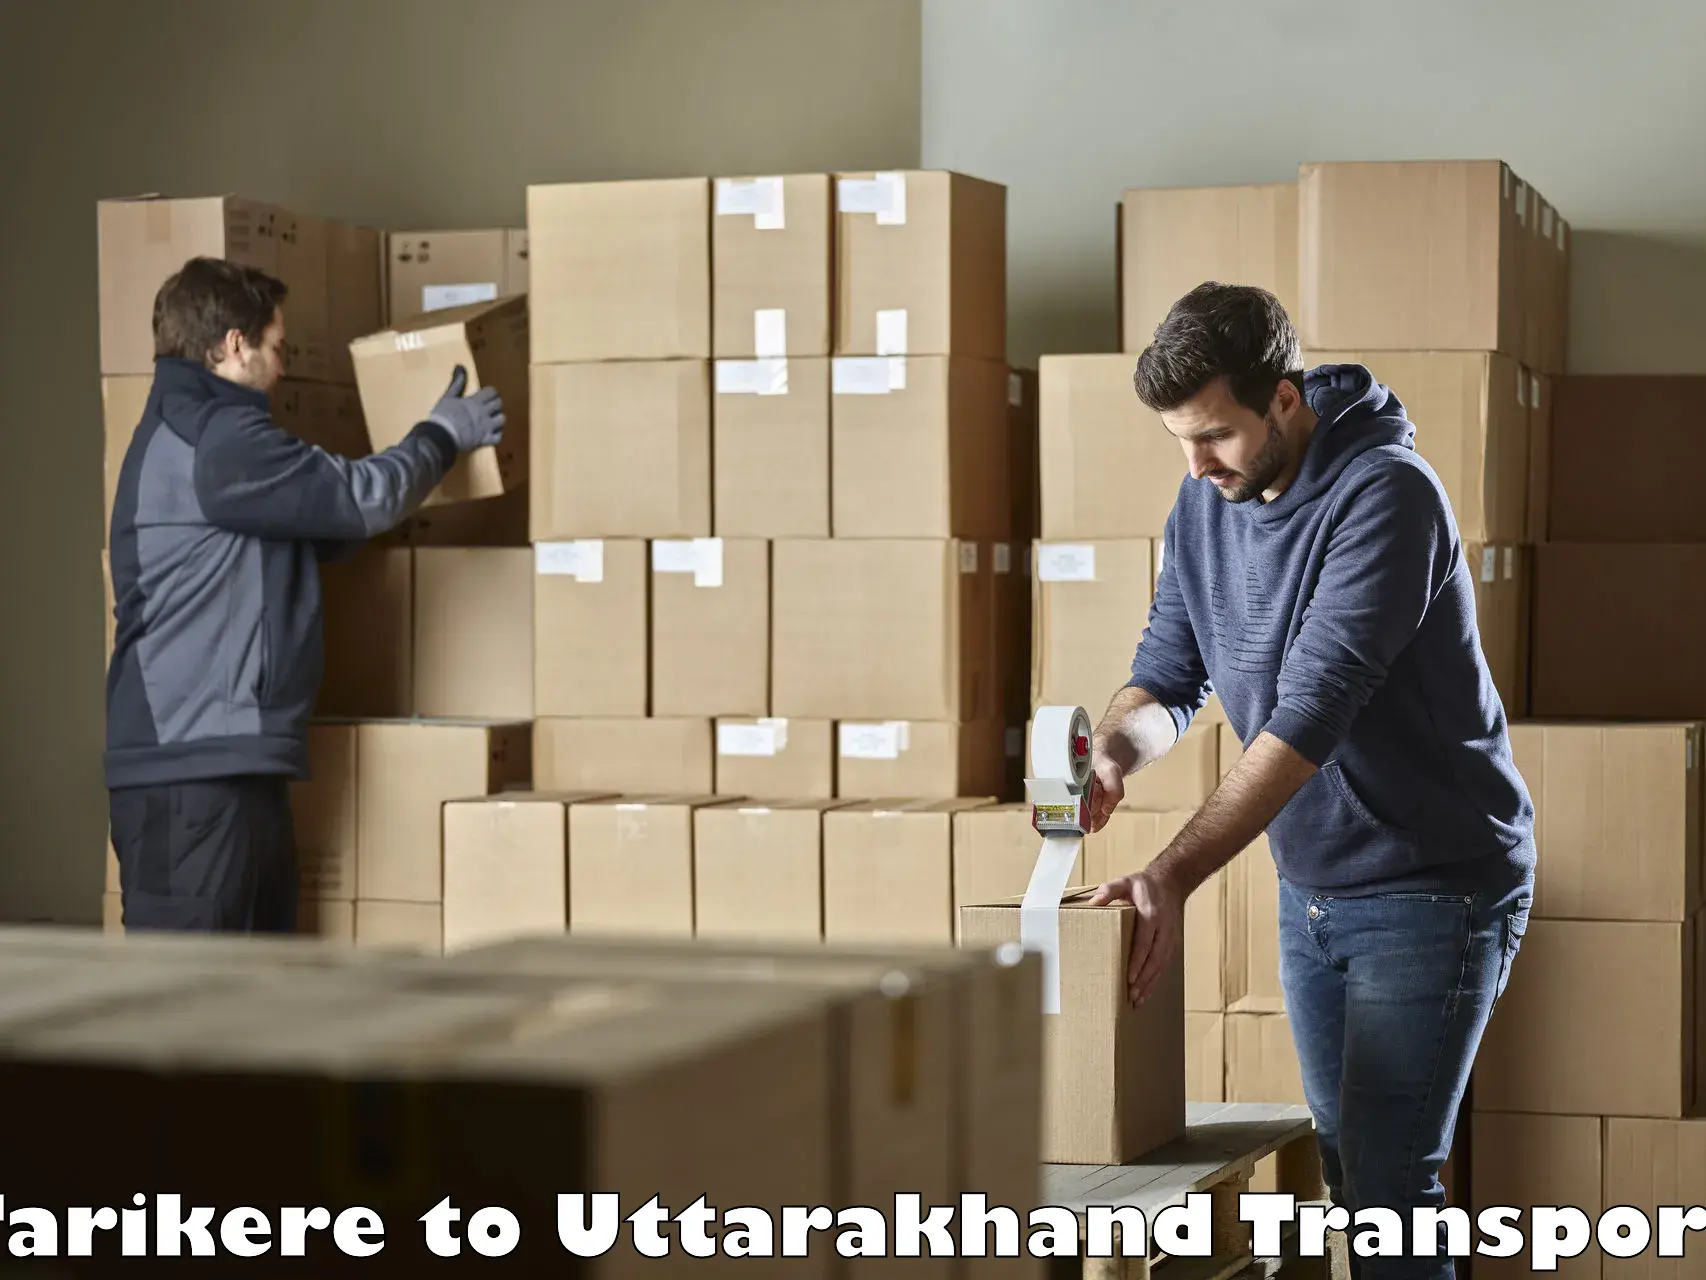 Road transport online services Tarikere to Uttarkashi